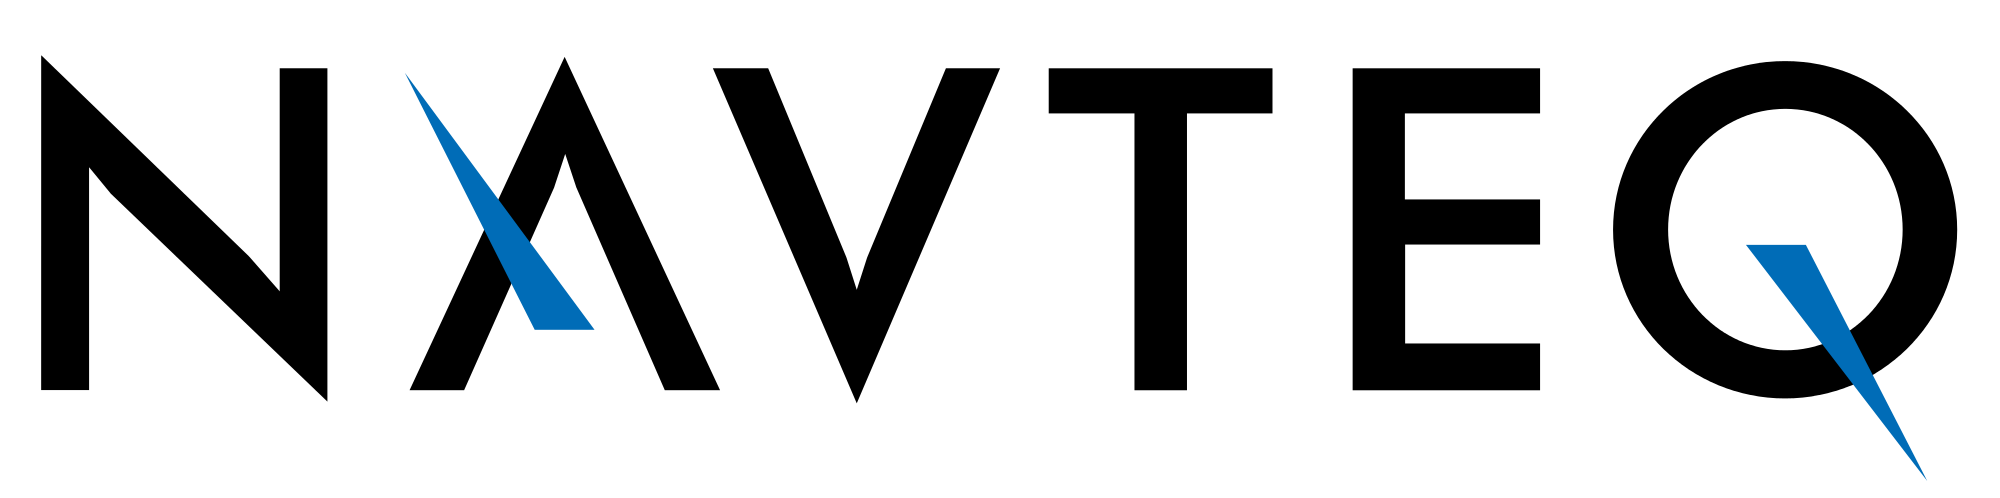 Navteq Brand Logo